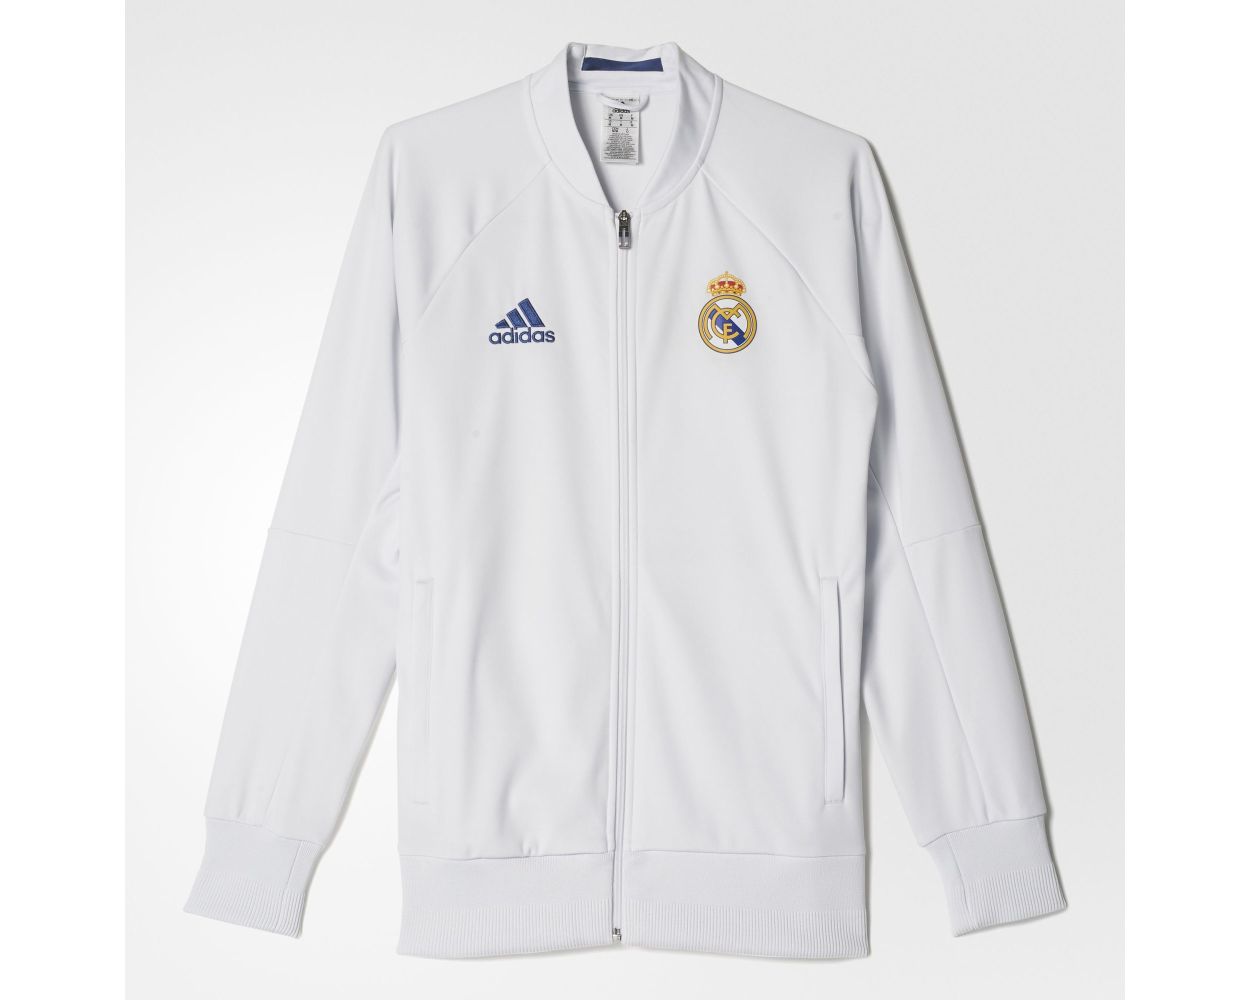 adidas white jacket 2016